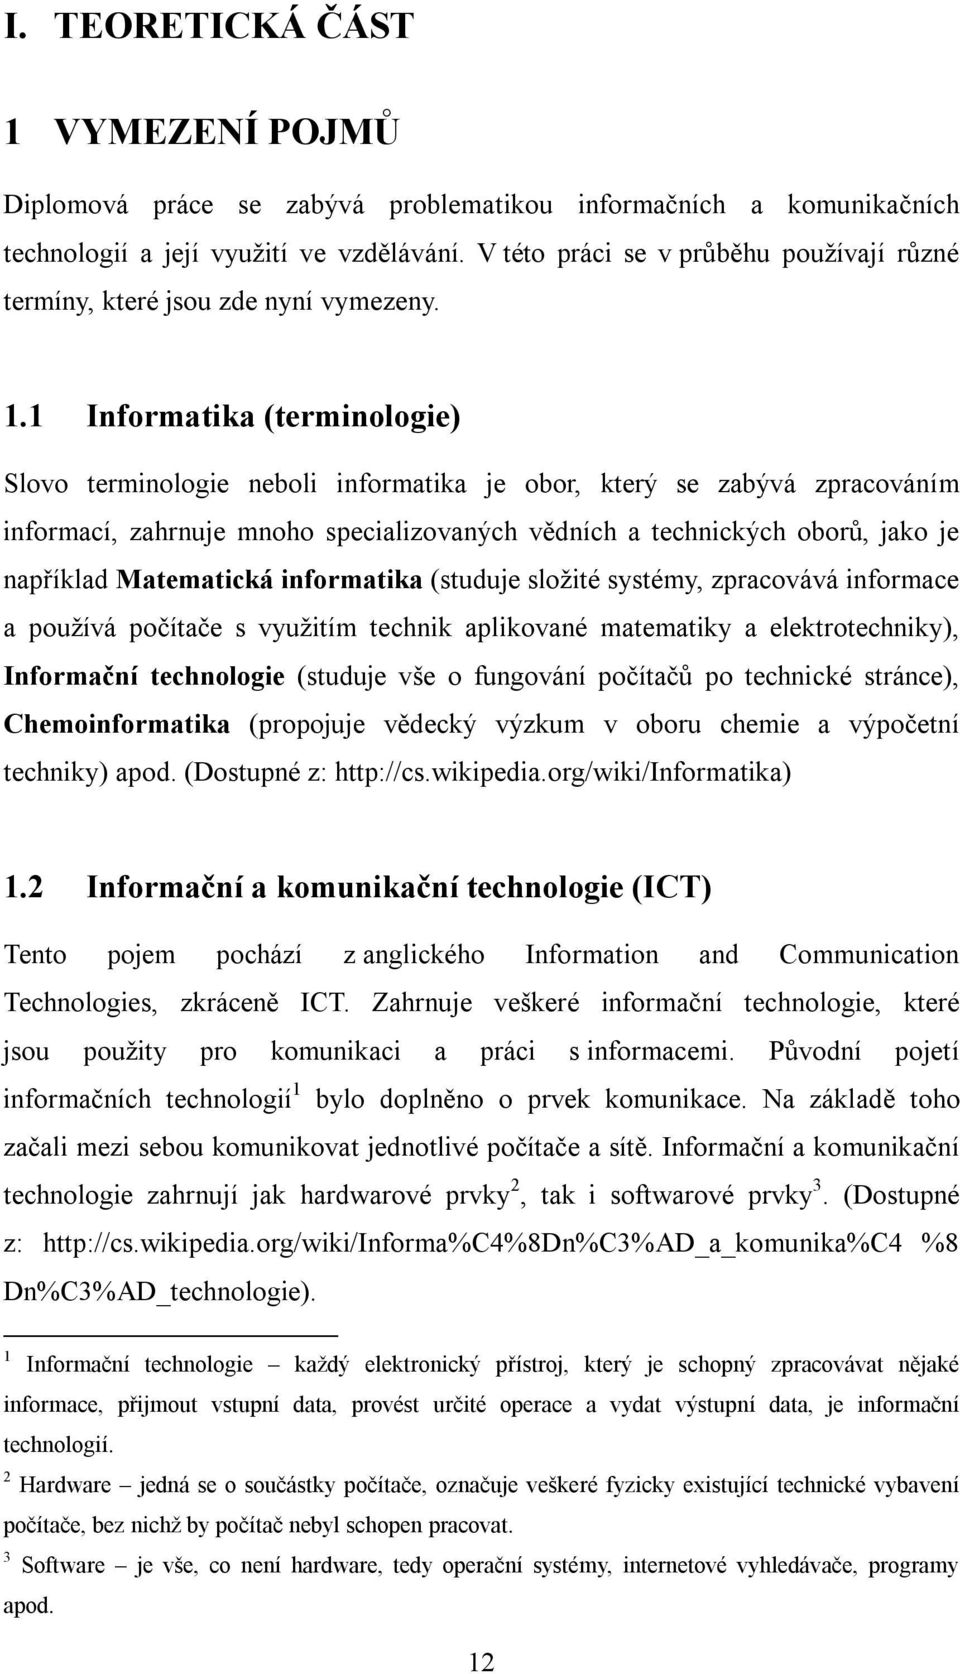 1 Informatika (terminologie) Slovo terminologie neboli informatika je obor, který se zabývá zpracováním informací, zahrnuje mnoho specializovaných vědních a technických oborů, jako je například